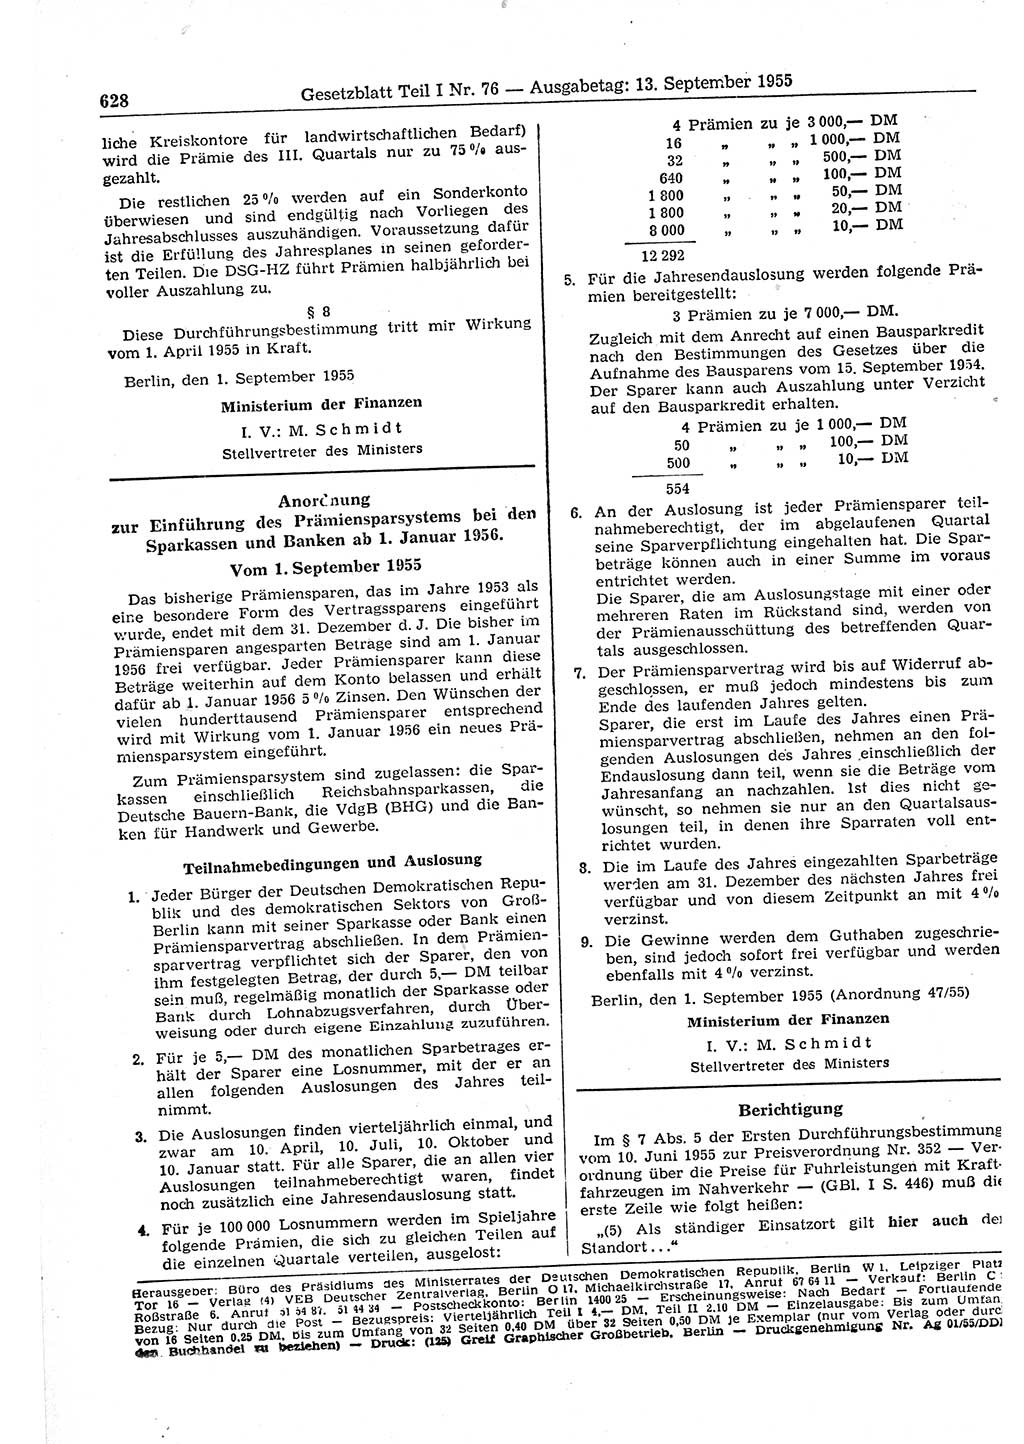 Gesetzblatt (GBl.) der Deutschen Demokratischen Republik (DDR) Teil Ⅰ 1955, Seite 628 (GBl. DDR Ⅰ 1955, S. 628)